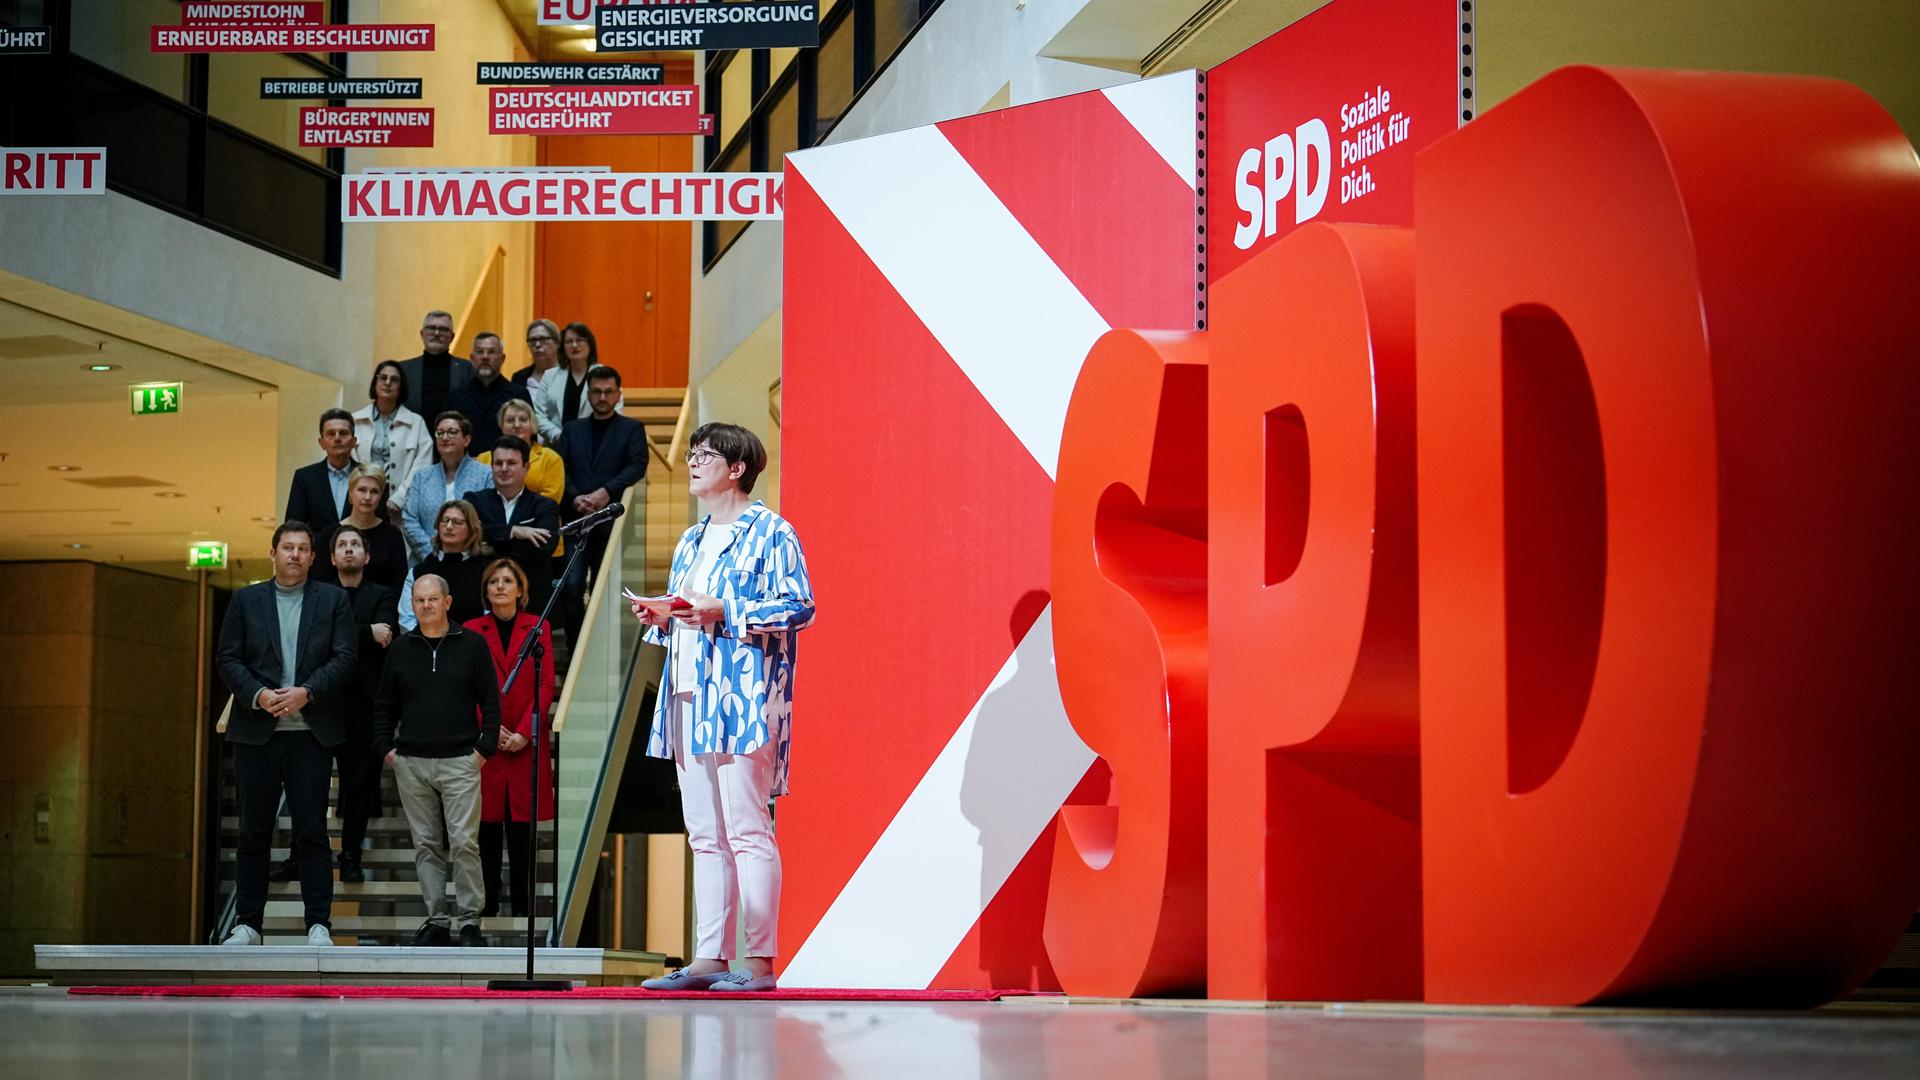 Eine Frau hält eine Rede, auf der rechten Seite stehen großen rote Buchstaben: SPD